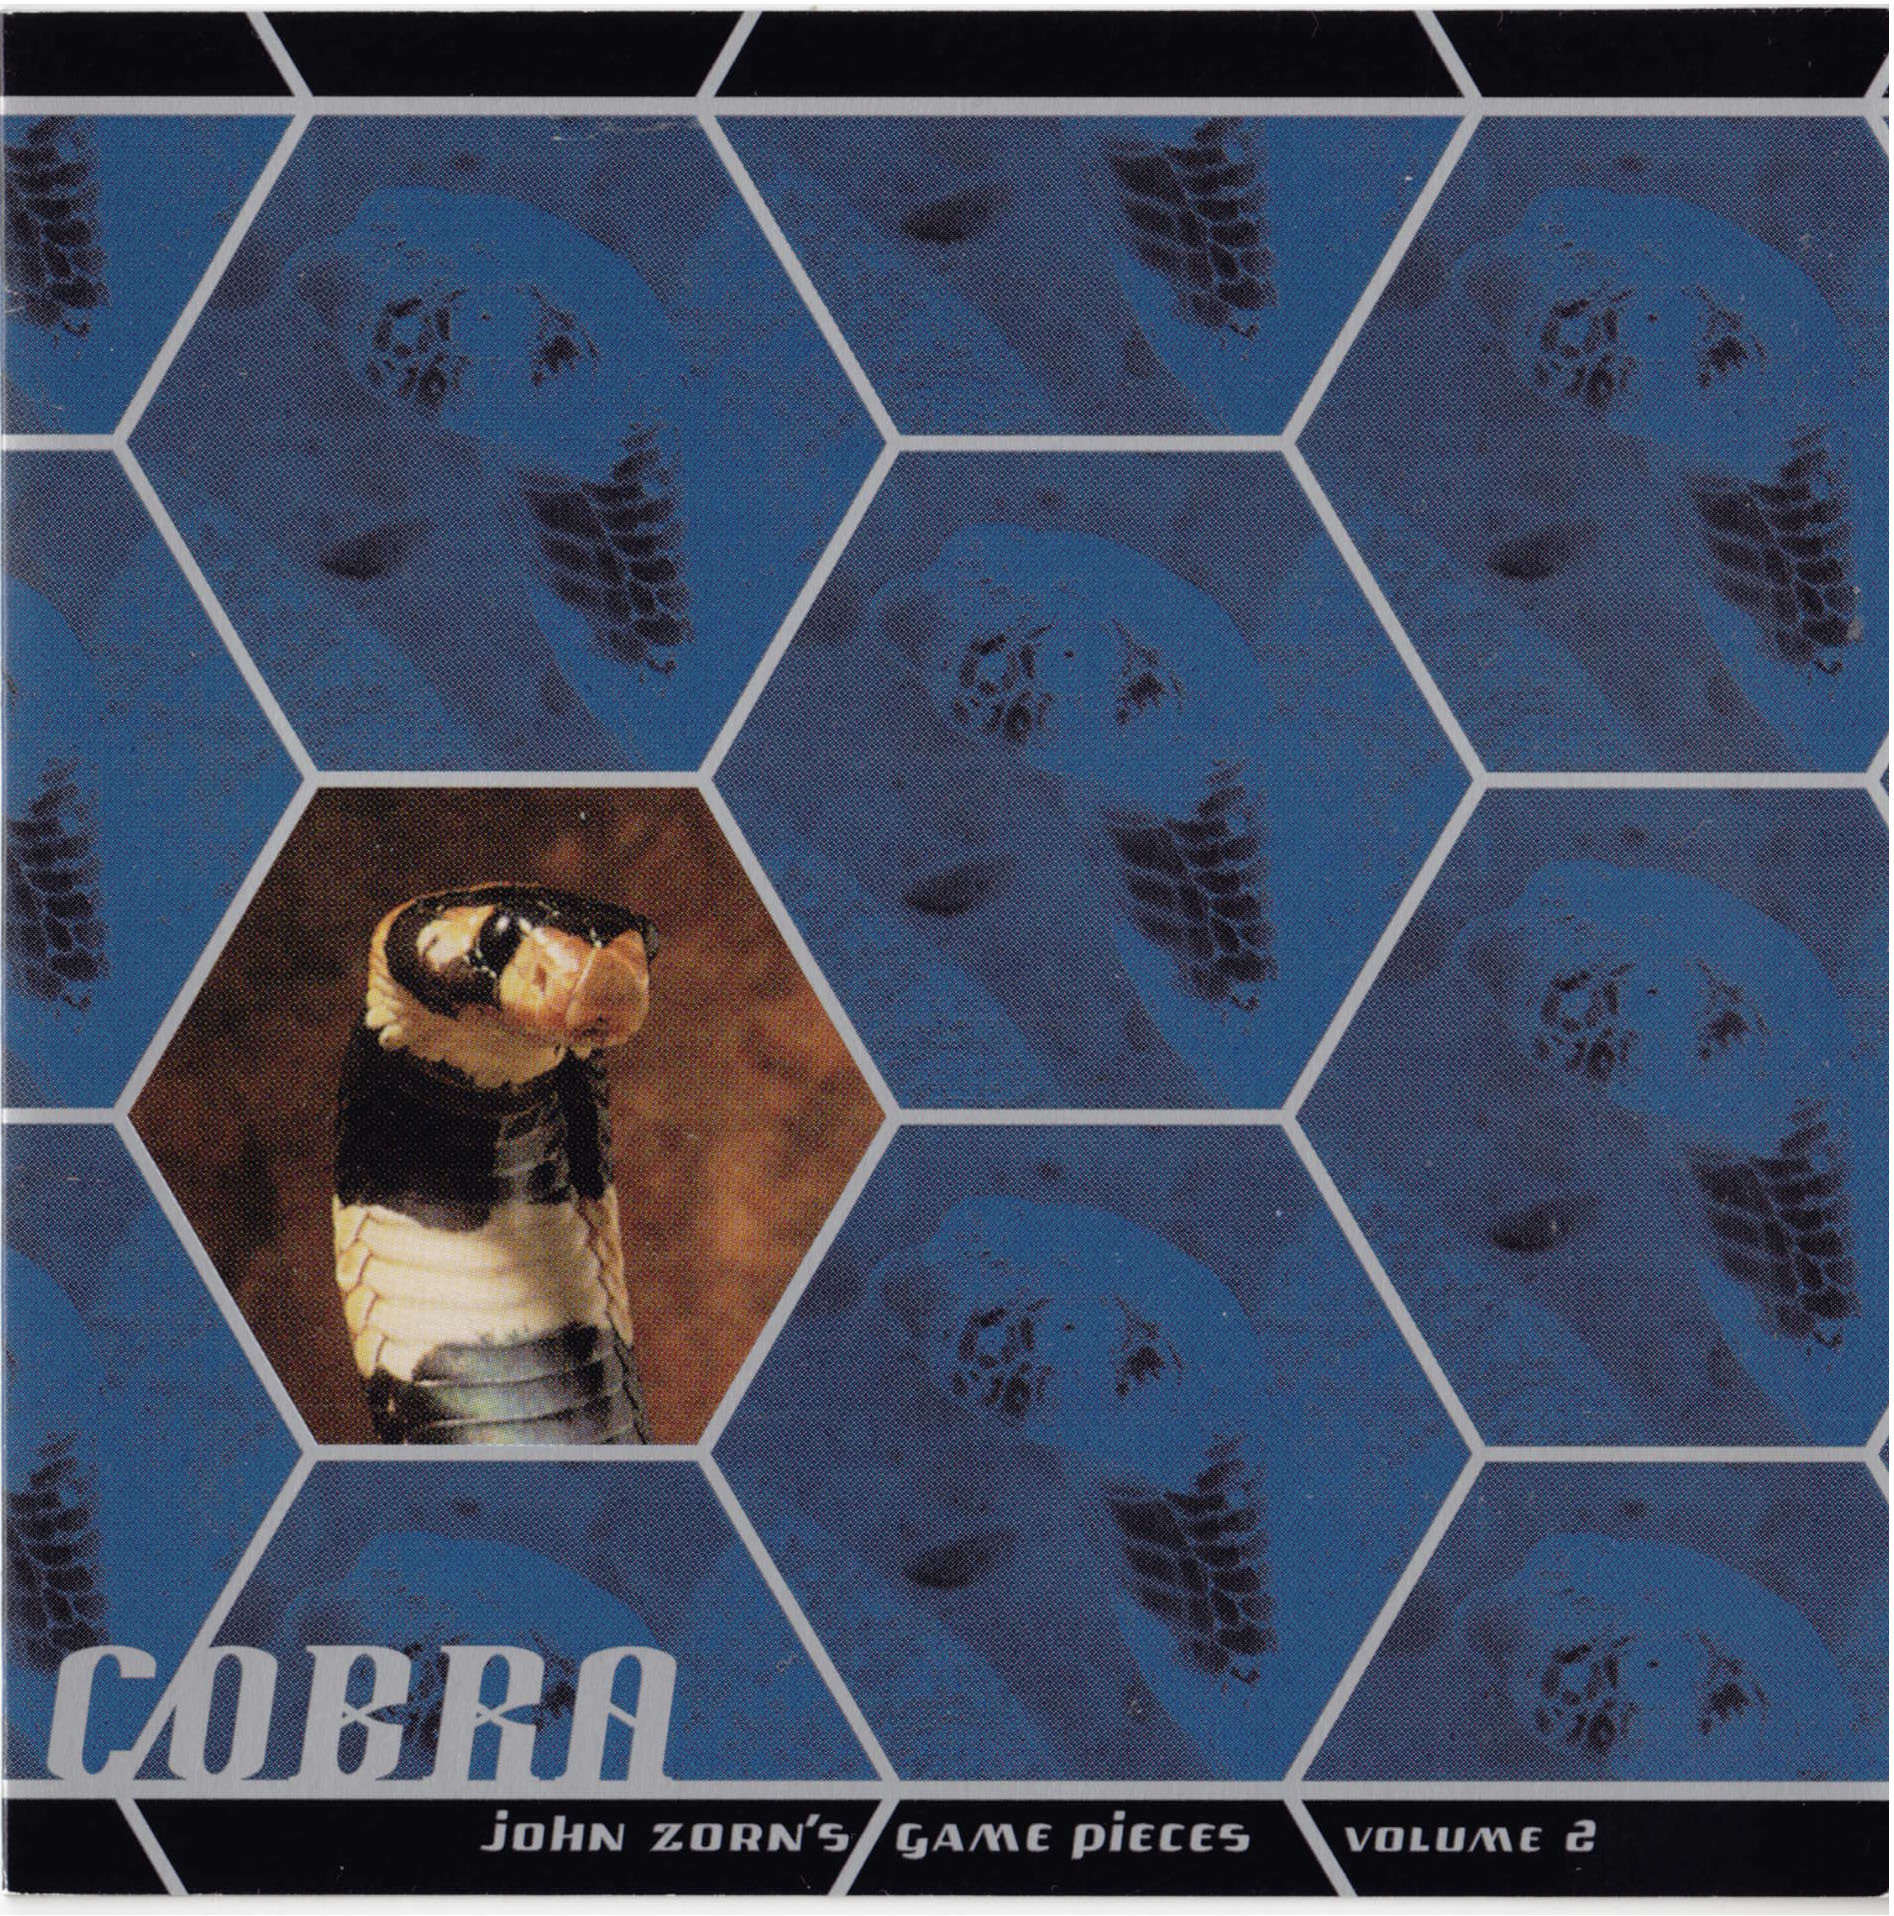 John Zorn: Cobra